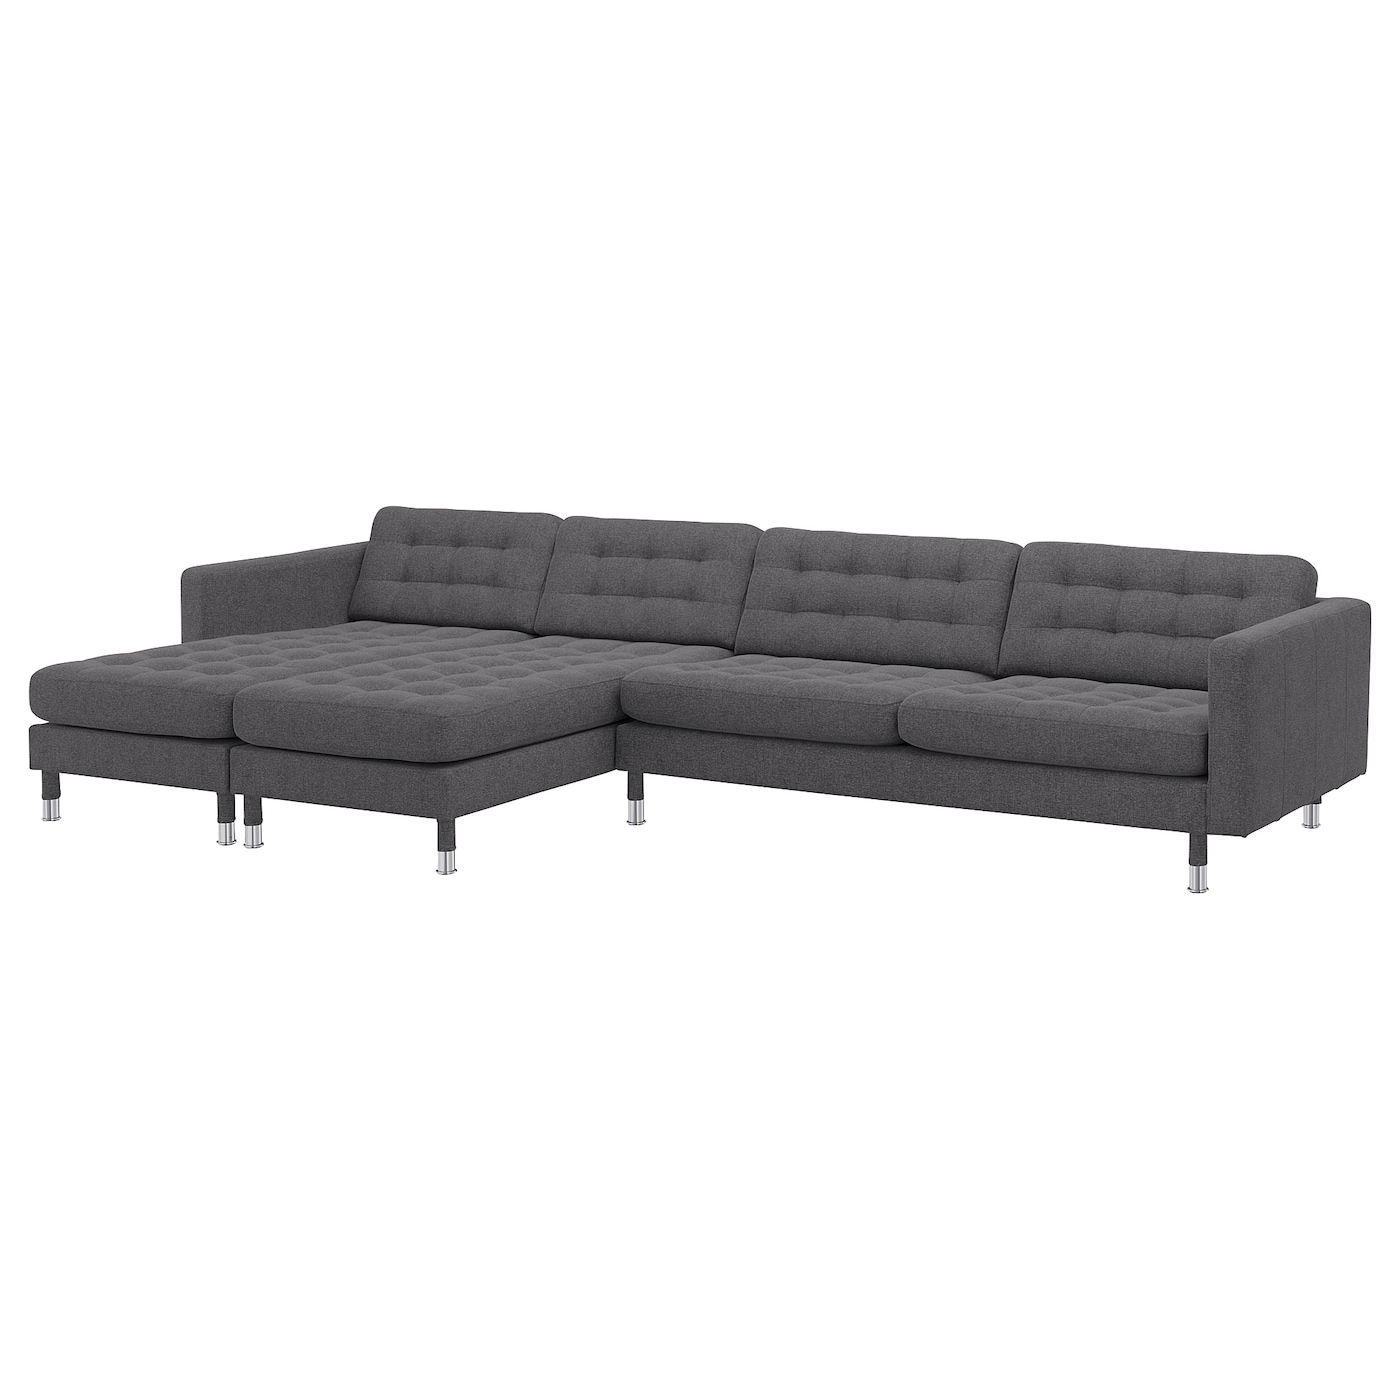 5-местный диван с шезлонгом - IKEA LANDSKRONA, 78x158x360см, темно-серый, ЛАНДСКРУНА ИКЕА